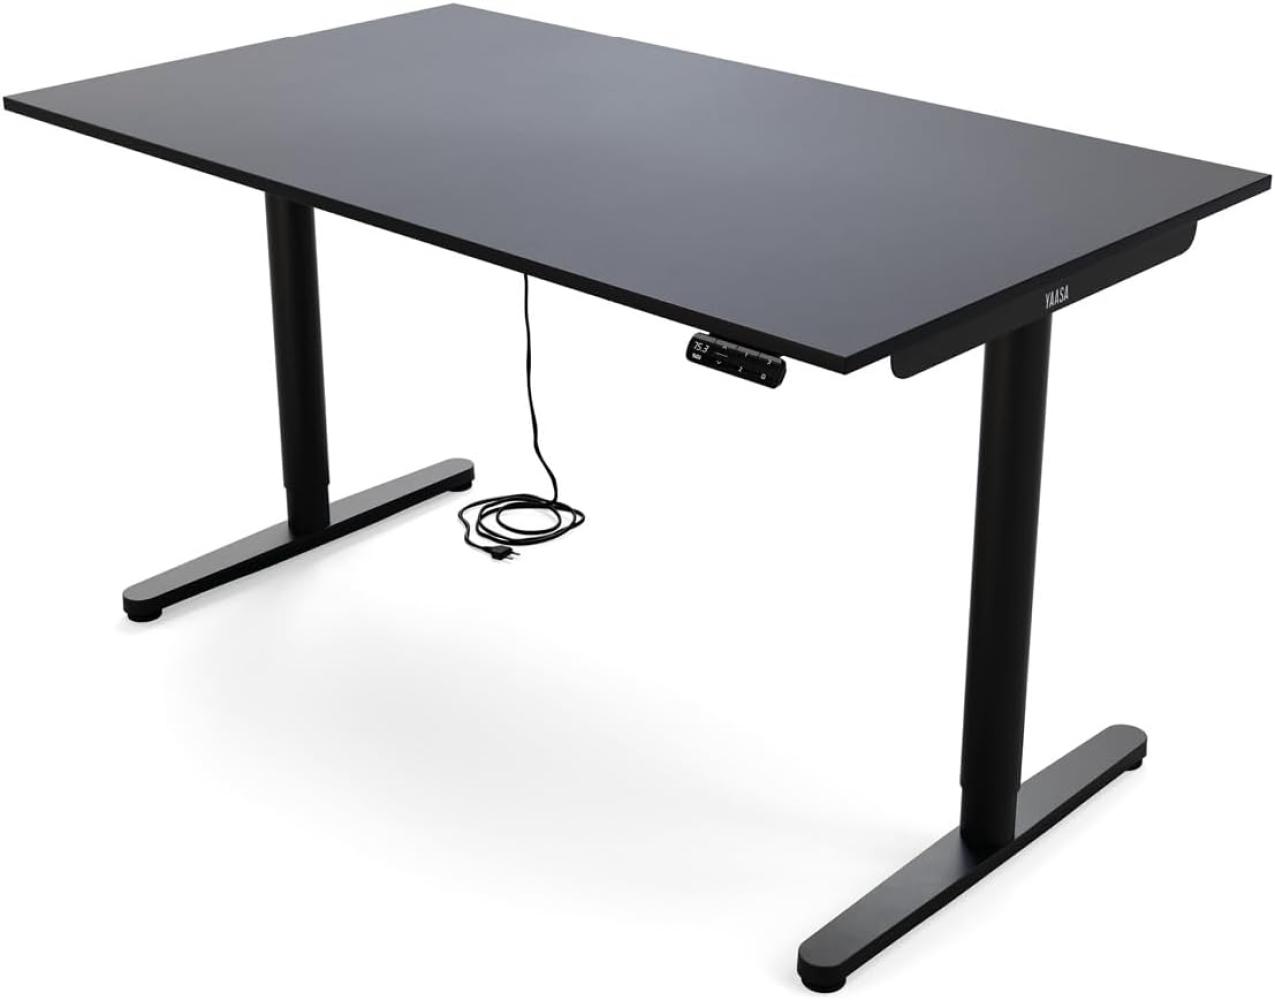 Yaasa Desk Essential Elektrisch höhenverstellbarer Schreibtisch, 140 x 80 cm, Anthrazit Bild 1